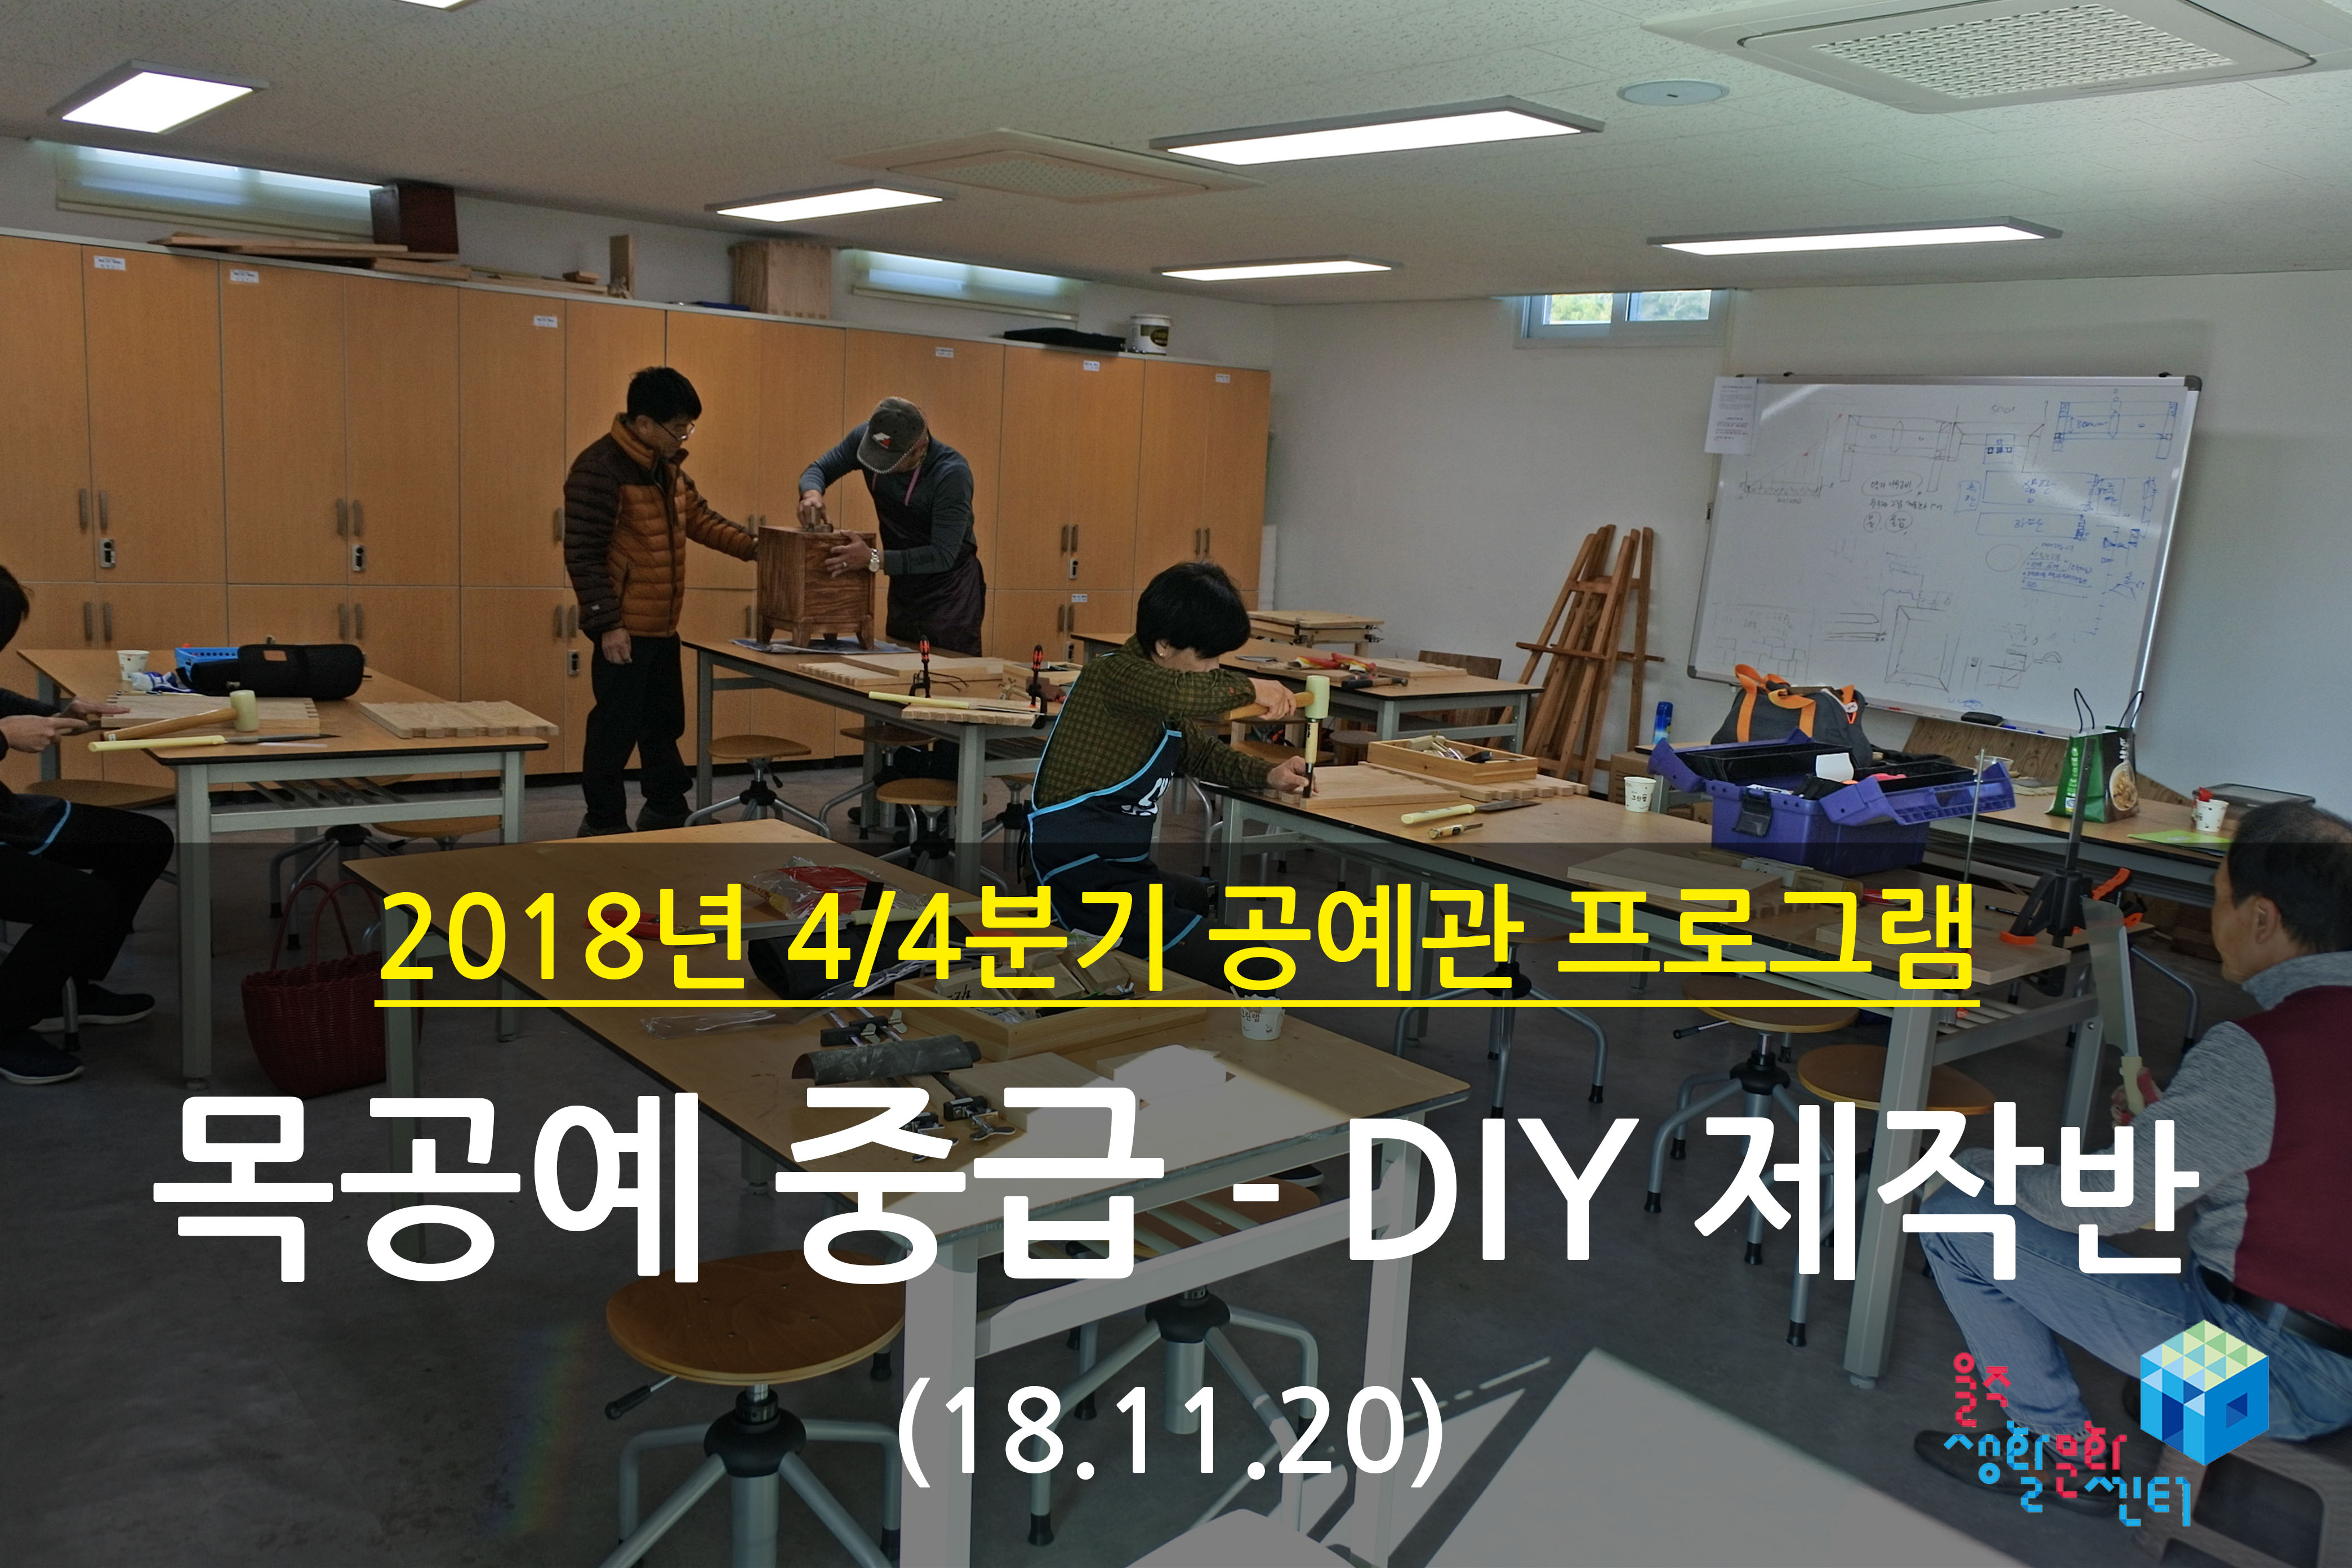 2018.11.20 _ 목공예 중급 - DIY 제작반 _ 4/4분기 7주차 수업